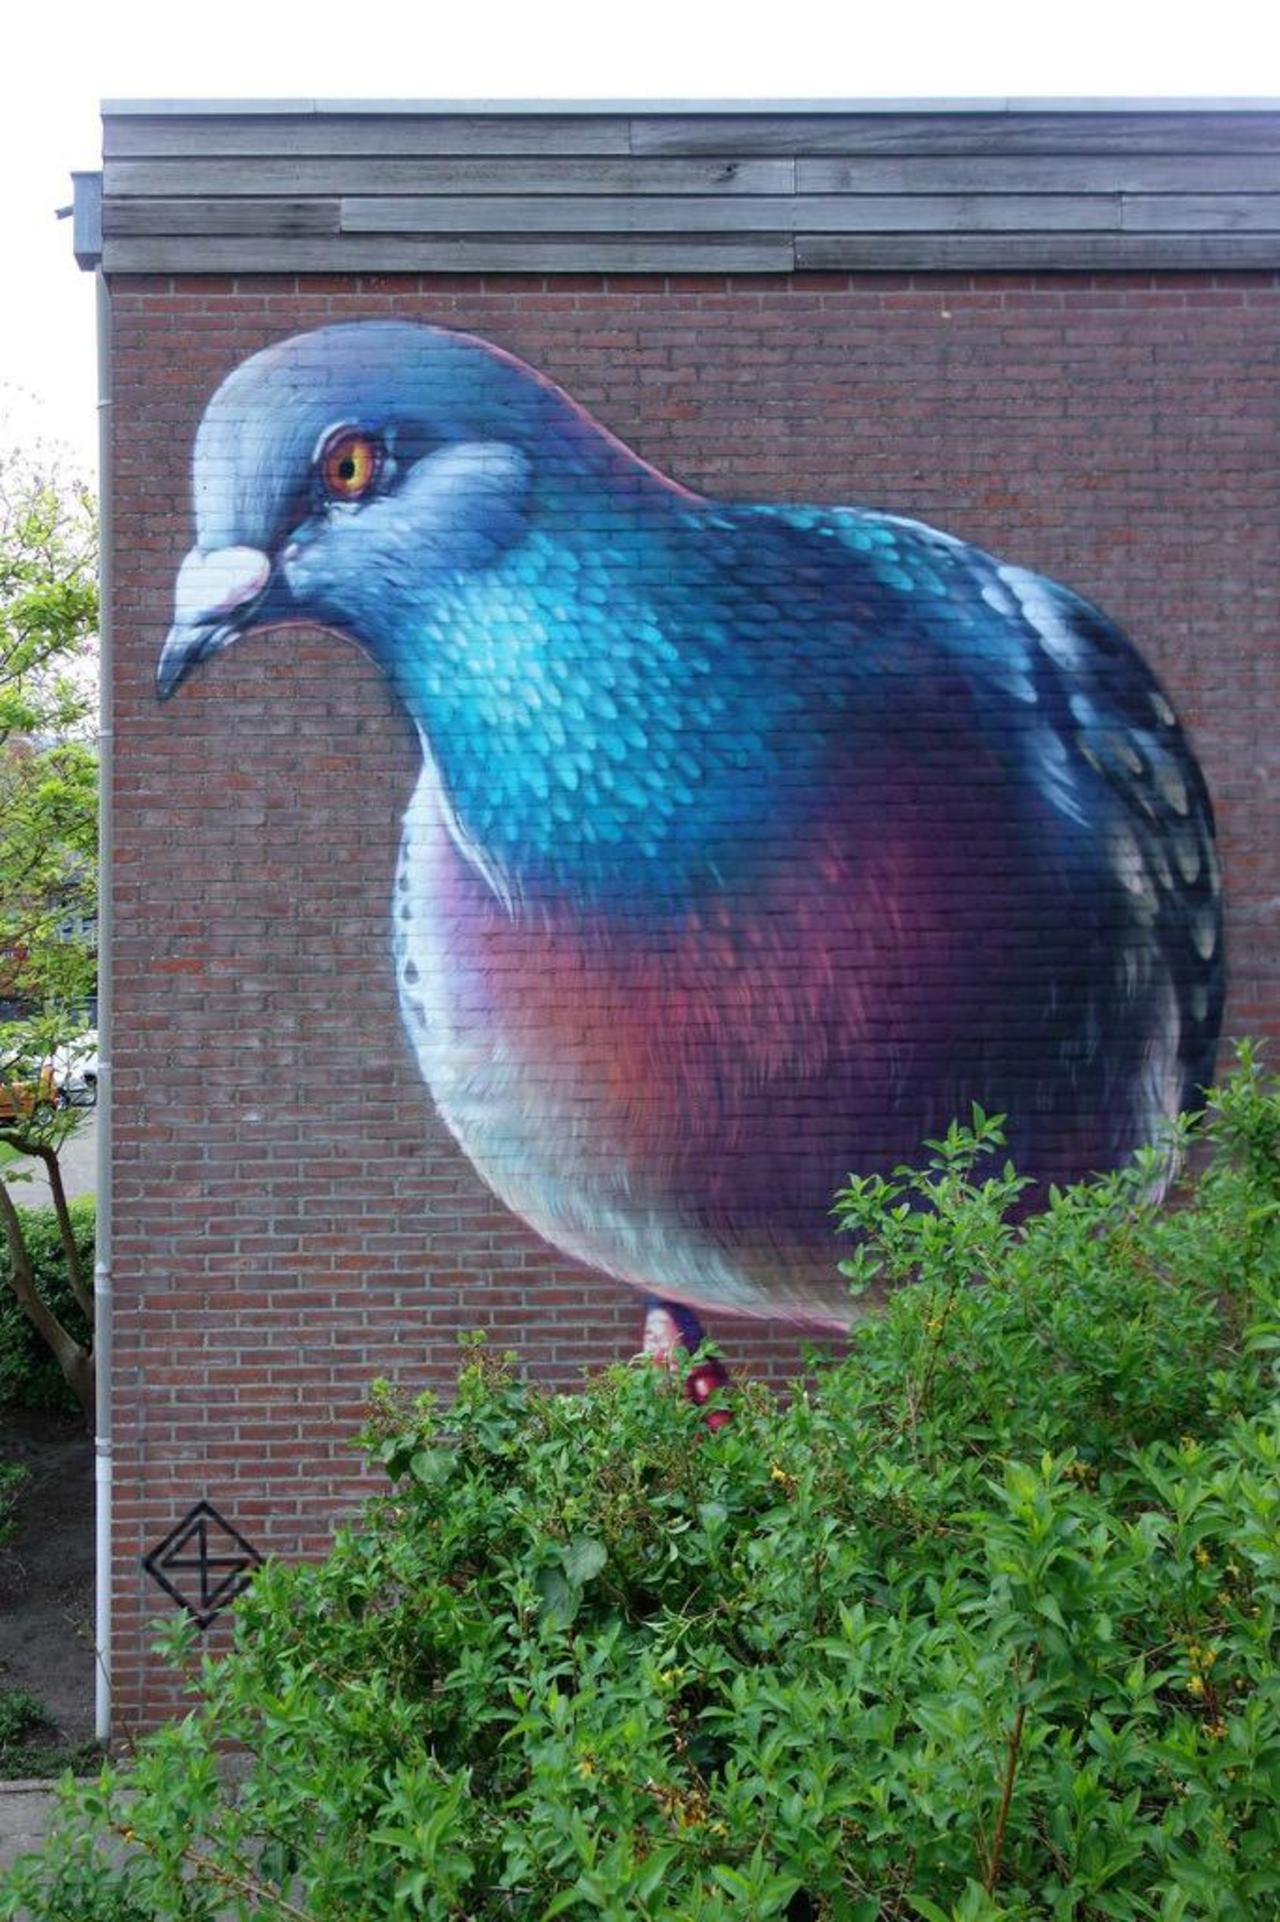 https://goo.gl/7kifqw RT GoogleStreetArt: Street Art by Super A 

#art #graffiti #mural #streetart http://t.co/4dxsUvOoG8